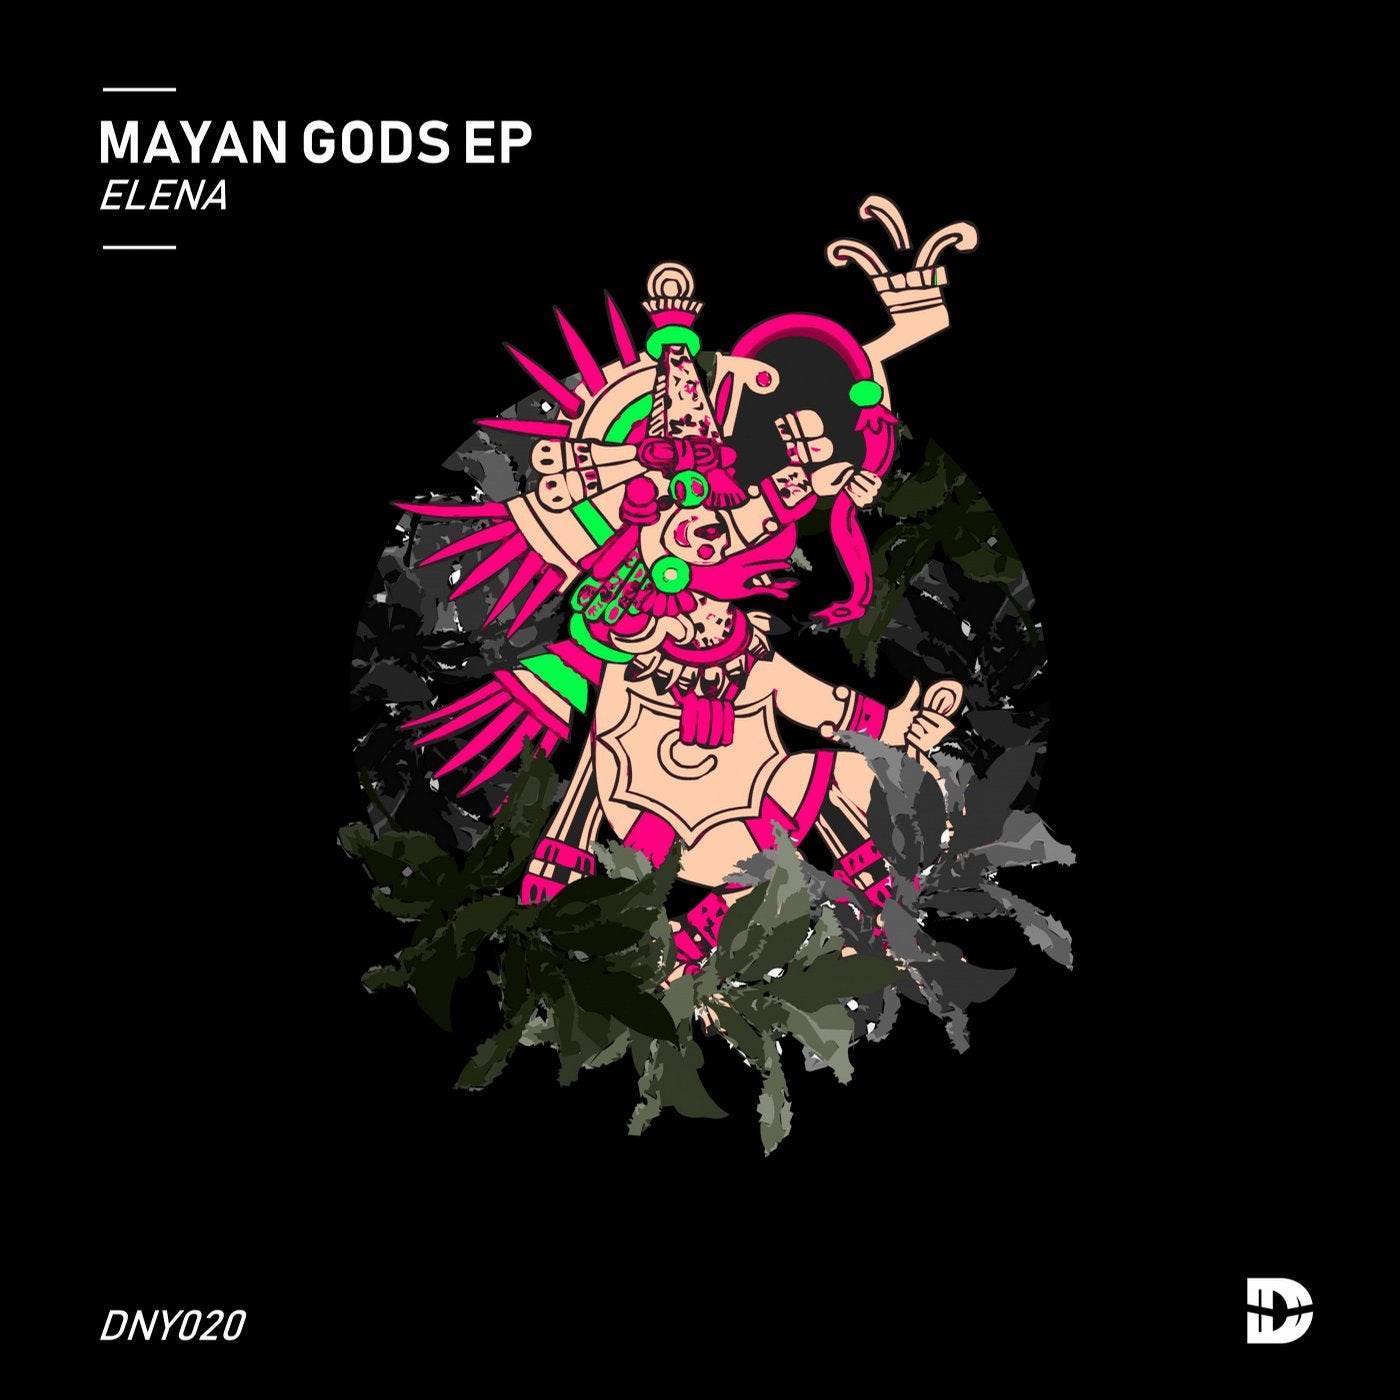 Mayan Gods EP